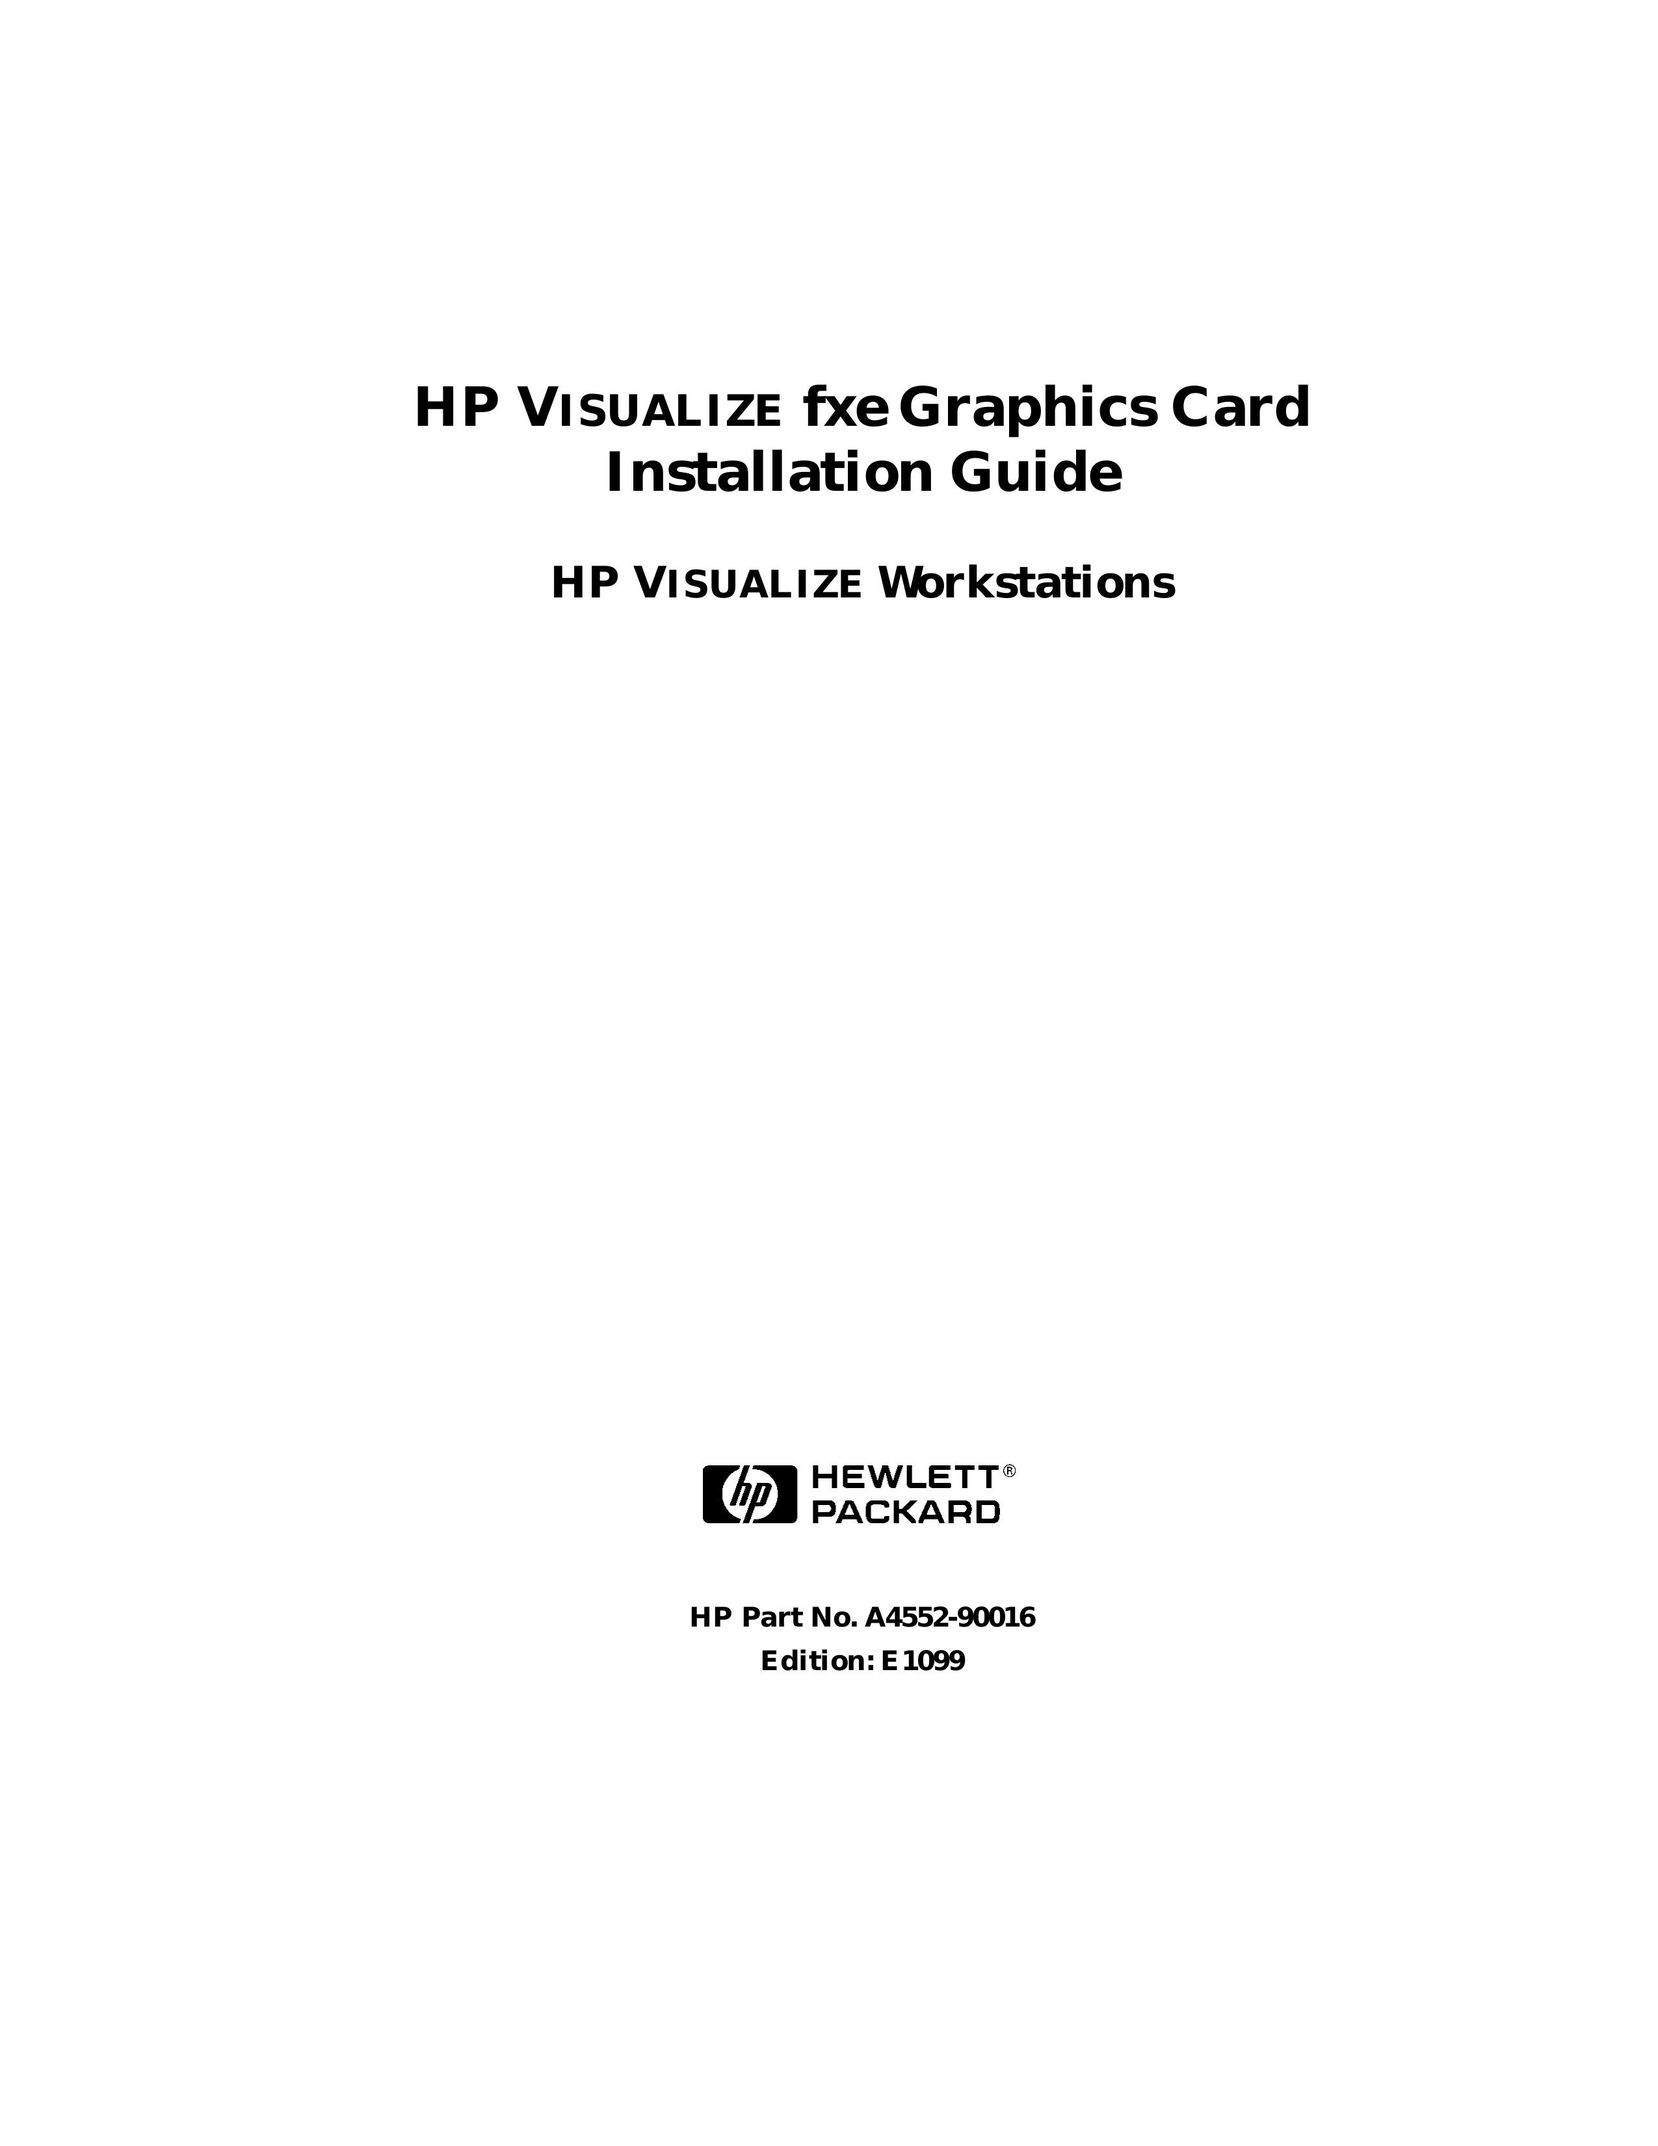 HP (Hewlett-Packard) a4552-90016 Calculator User Manual